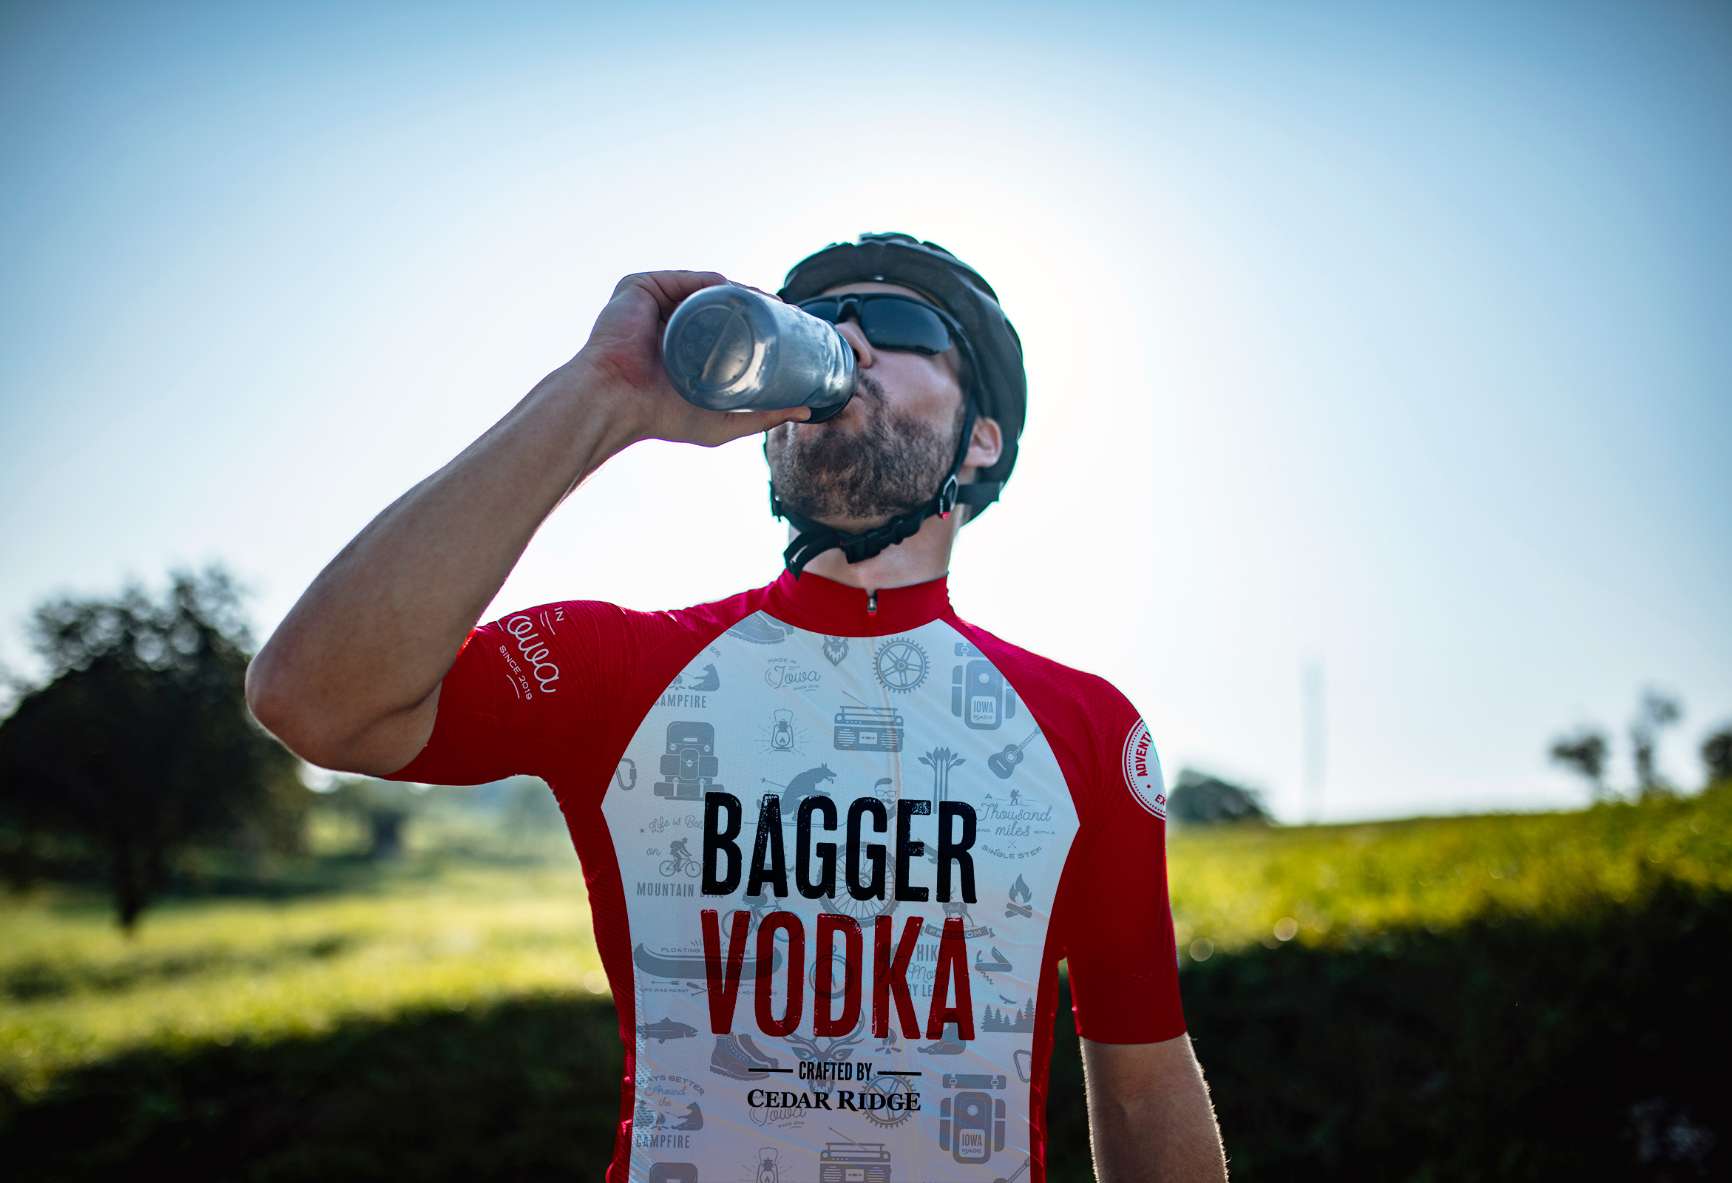 Bagger Vodka bike jersey worn by biker drinking water